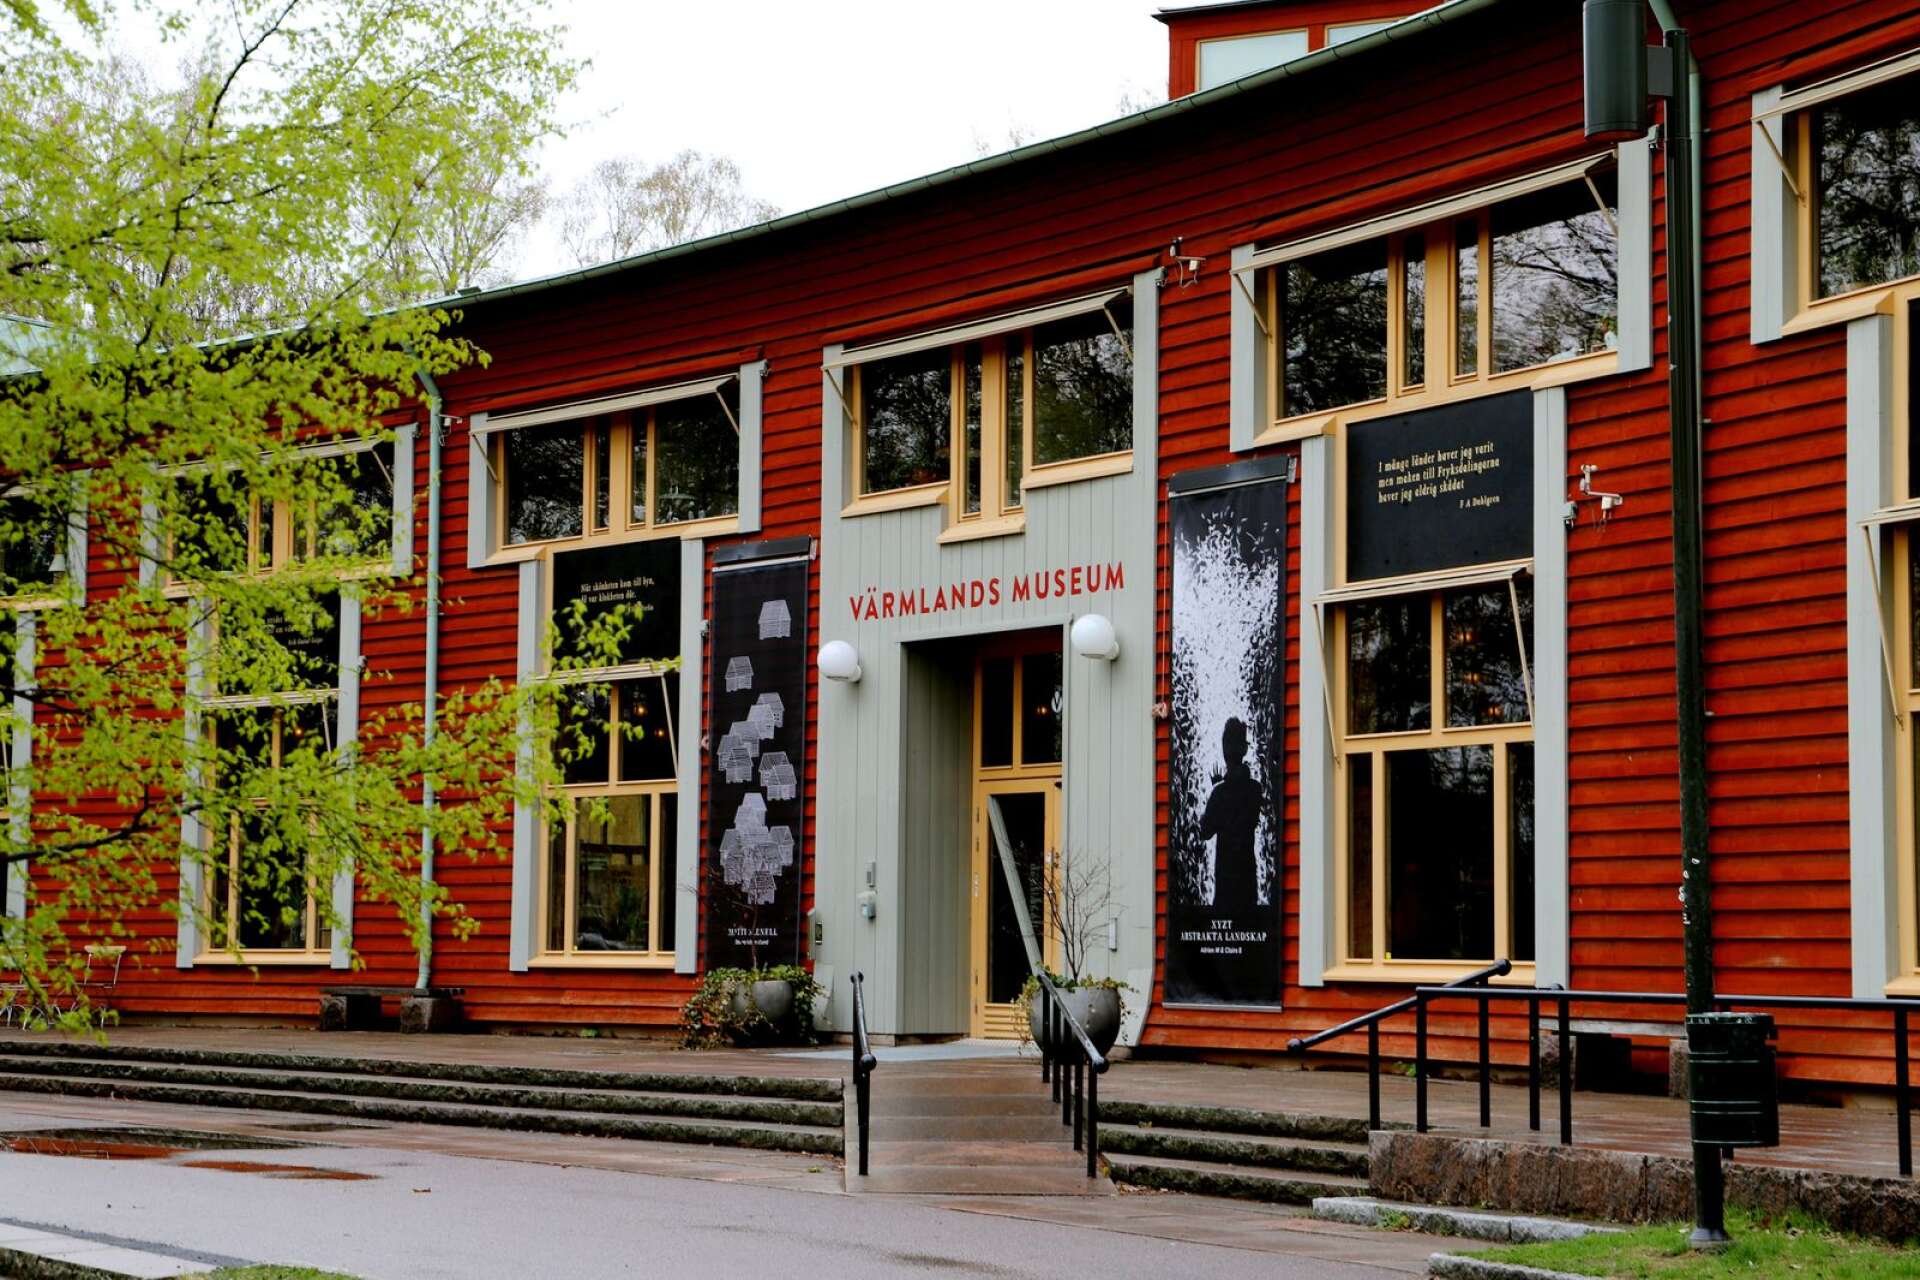 Värmlands museum har under sin tid som museum samlat föremål, berättelser och dokument, skriver Lena Melesjö Windahl och Philip Johnsson.